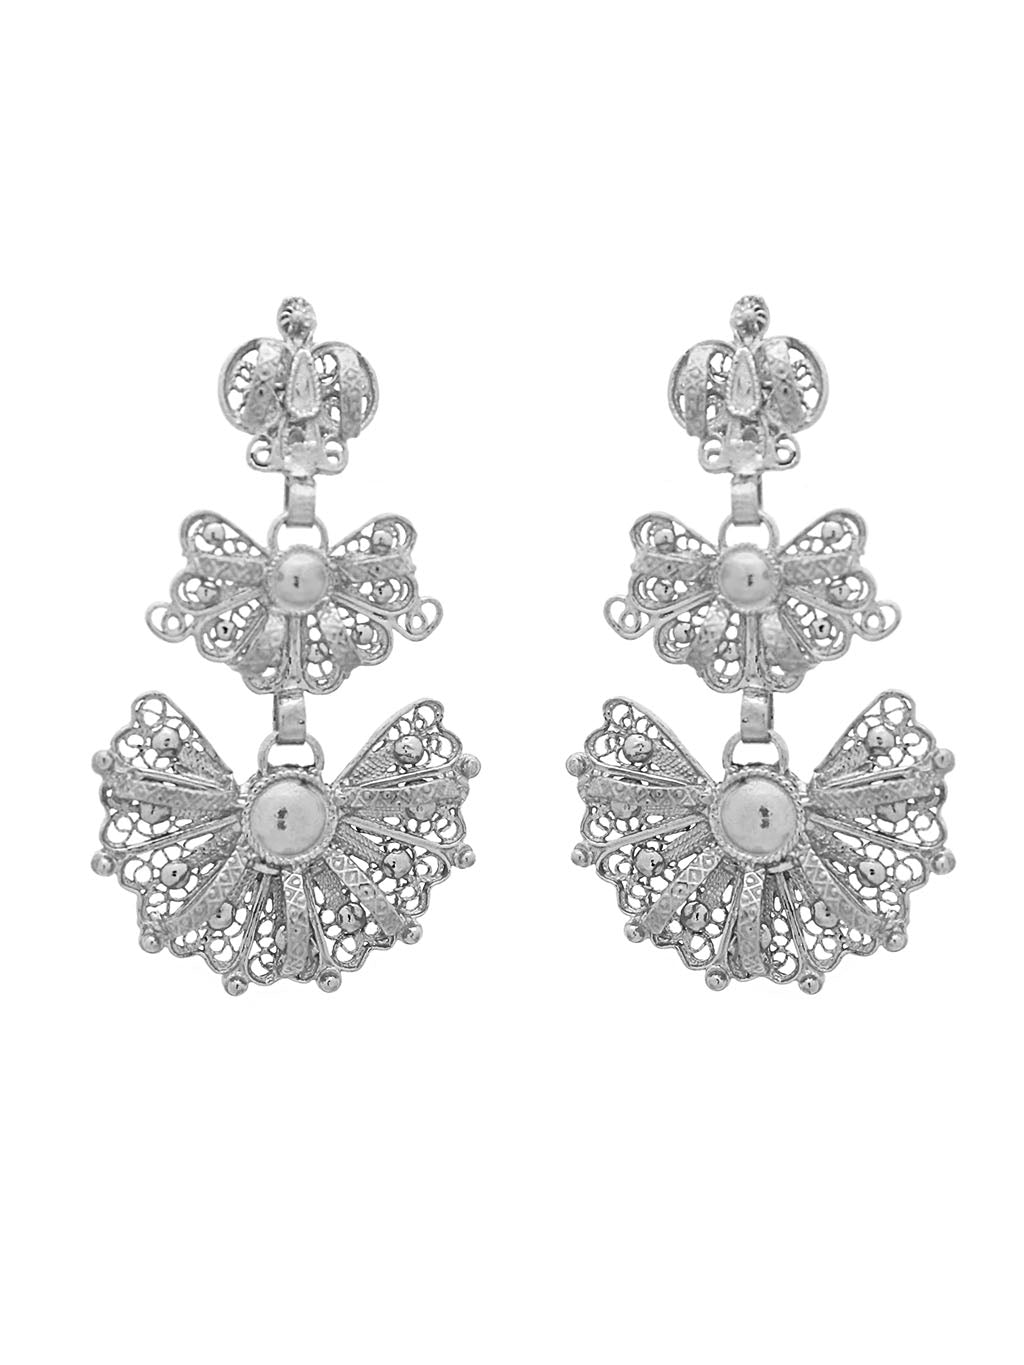 Galician earrings